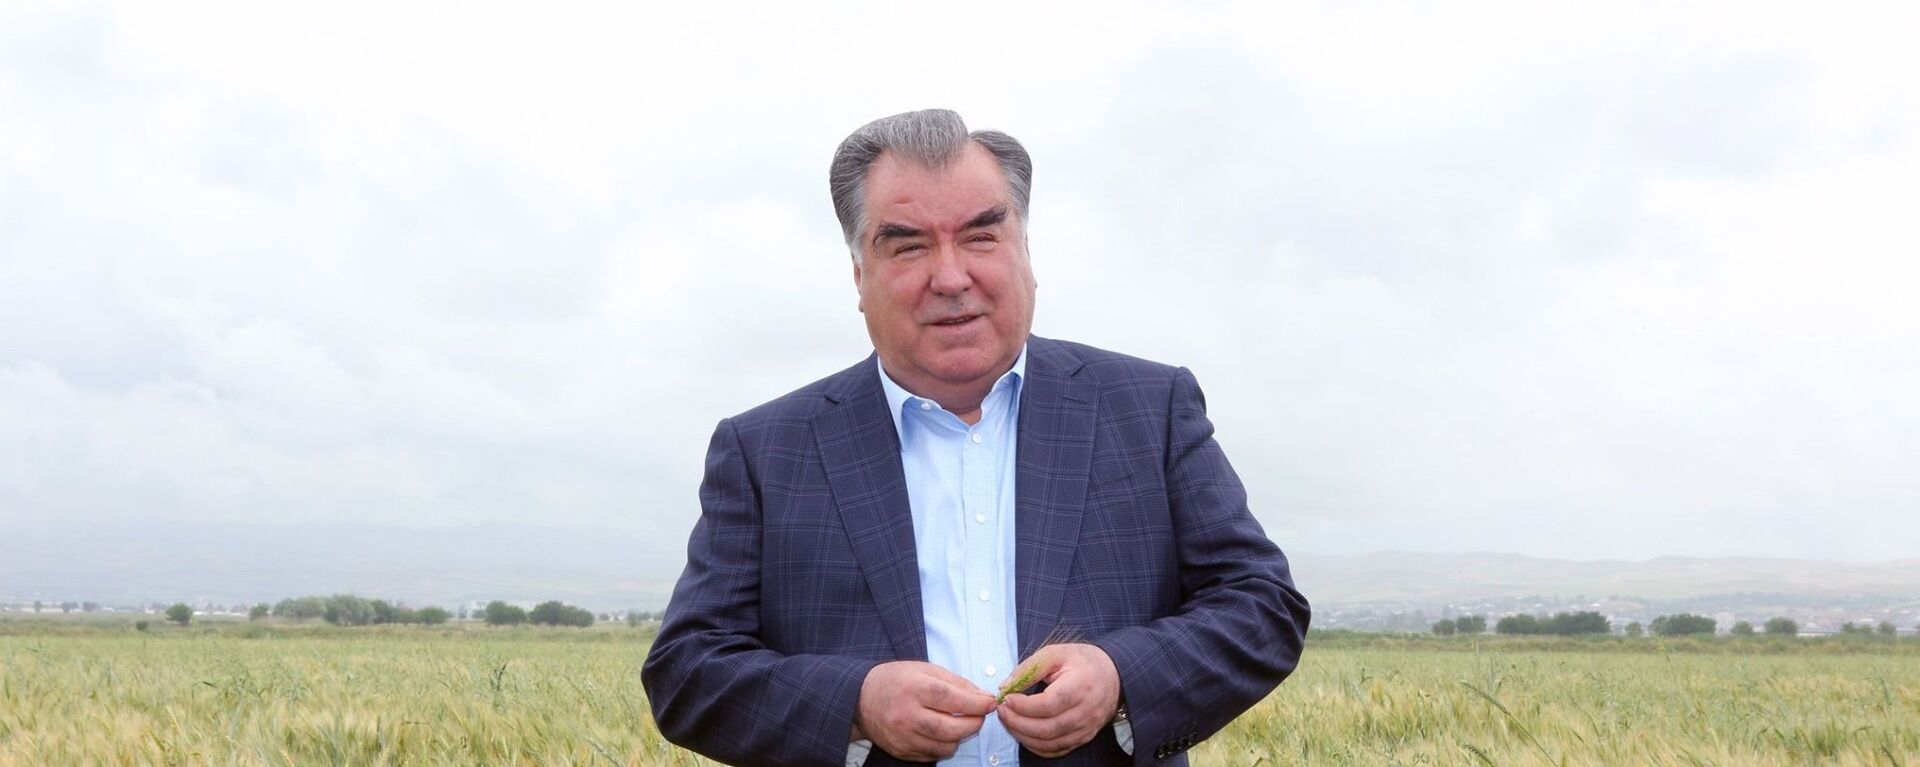 Президент Таджикистана Эмомали Рахмон - Sputnik Тоҷикистон, 1920, 24.05.2019